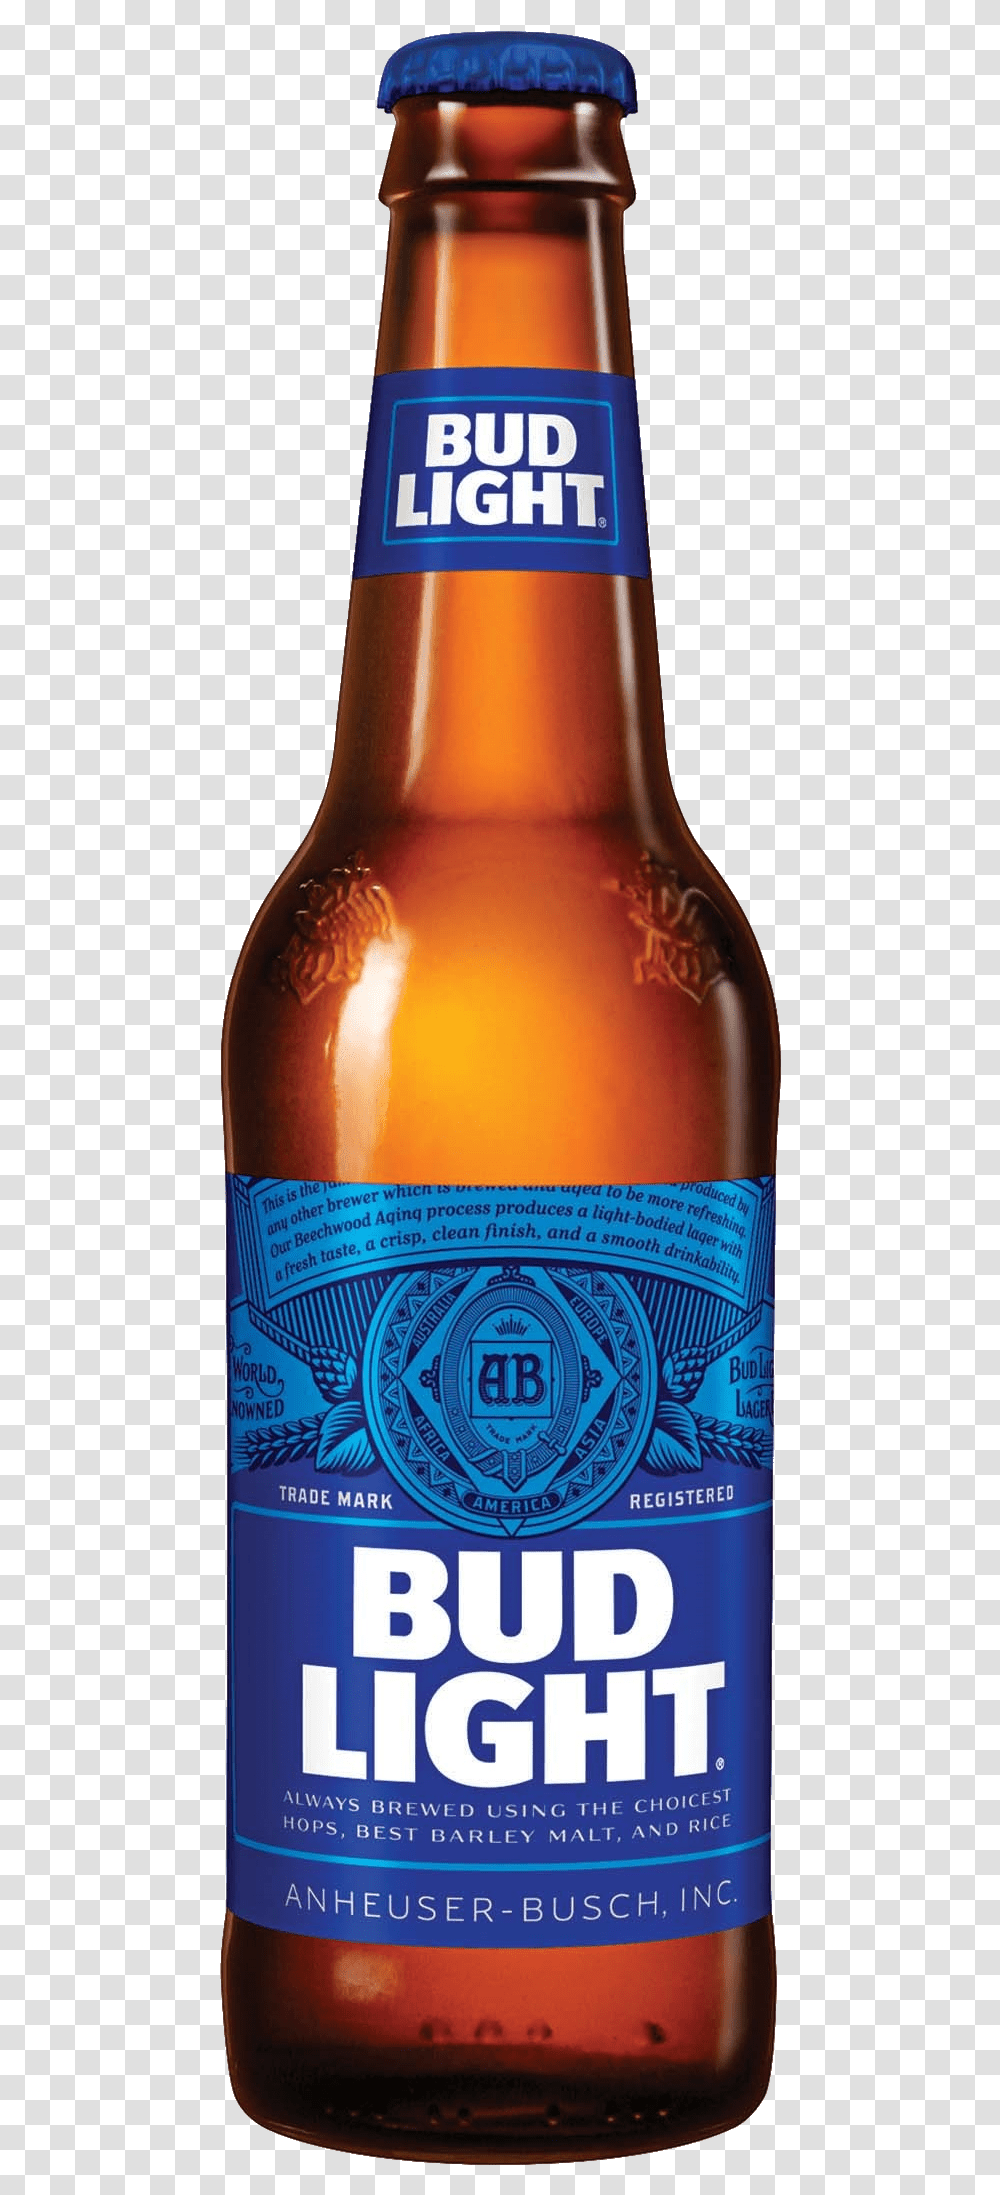 Lager Anheuser Busch Budweiser Company Brewing Beer Bud Light Background, Alcohol, Beverage, Drink, Bottle Transparent Png